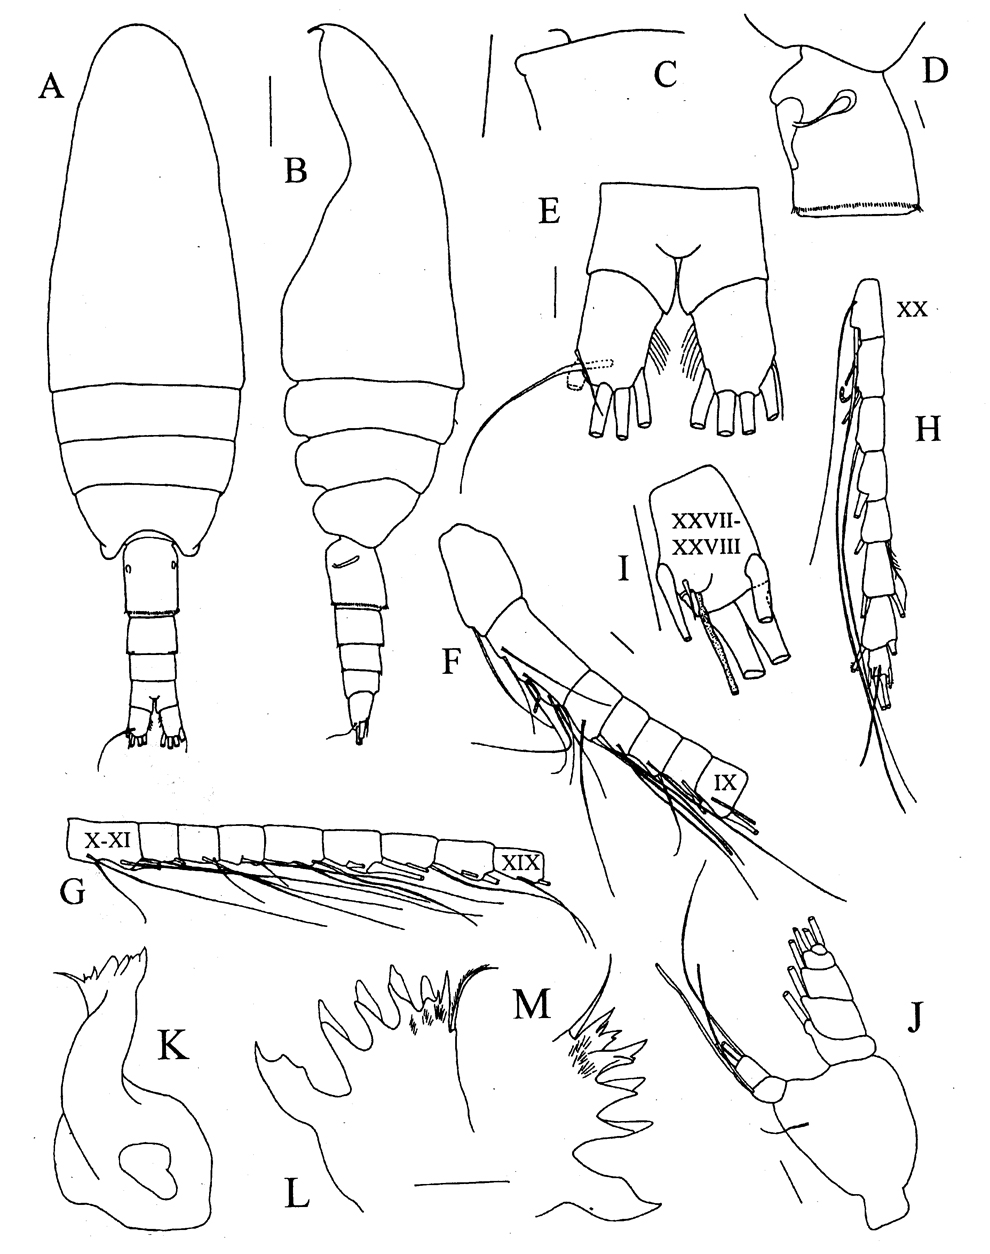 Species Bradyetes weddellanus - Plate 1 of morphological figures